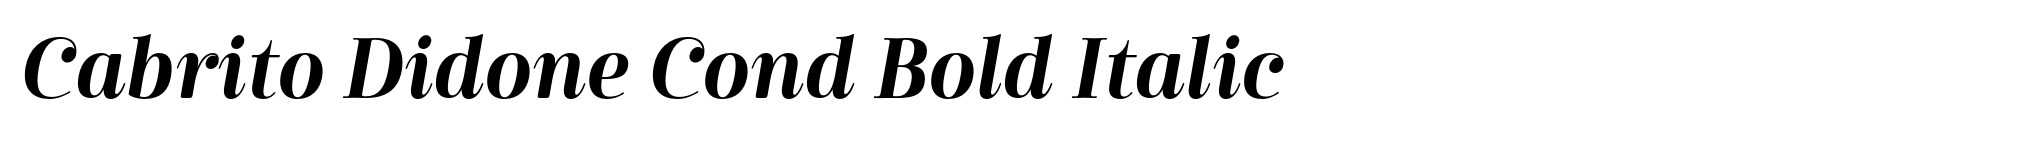 Cabrito Didone Cond Bold Italic image